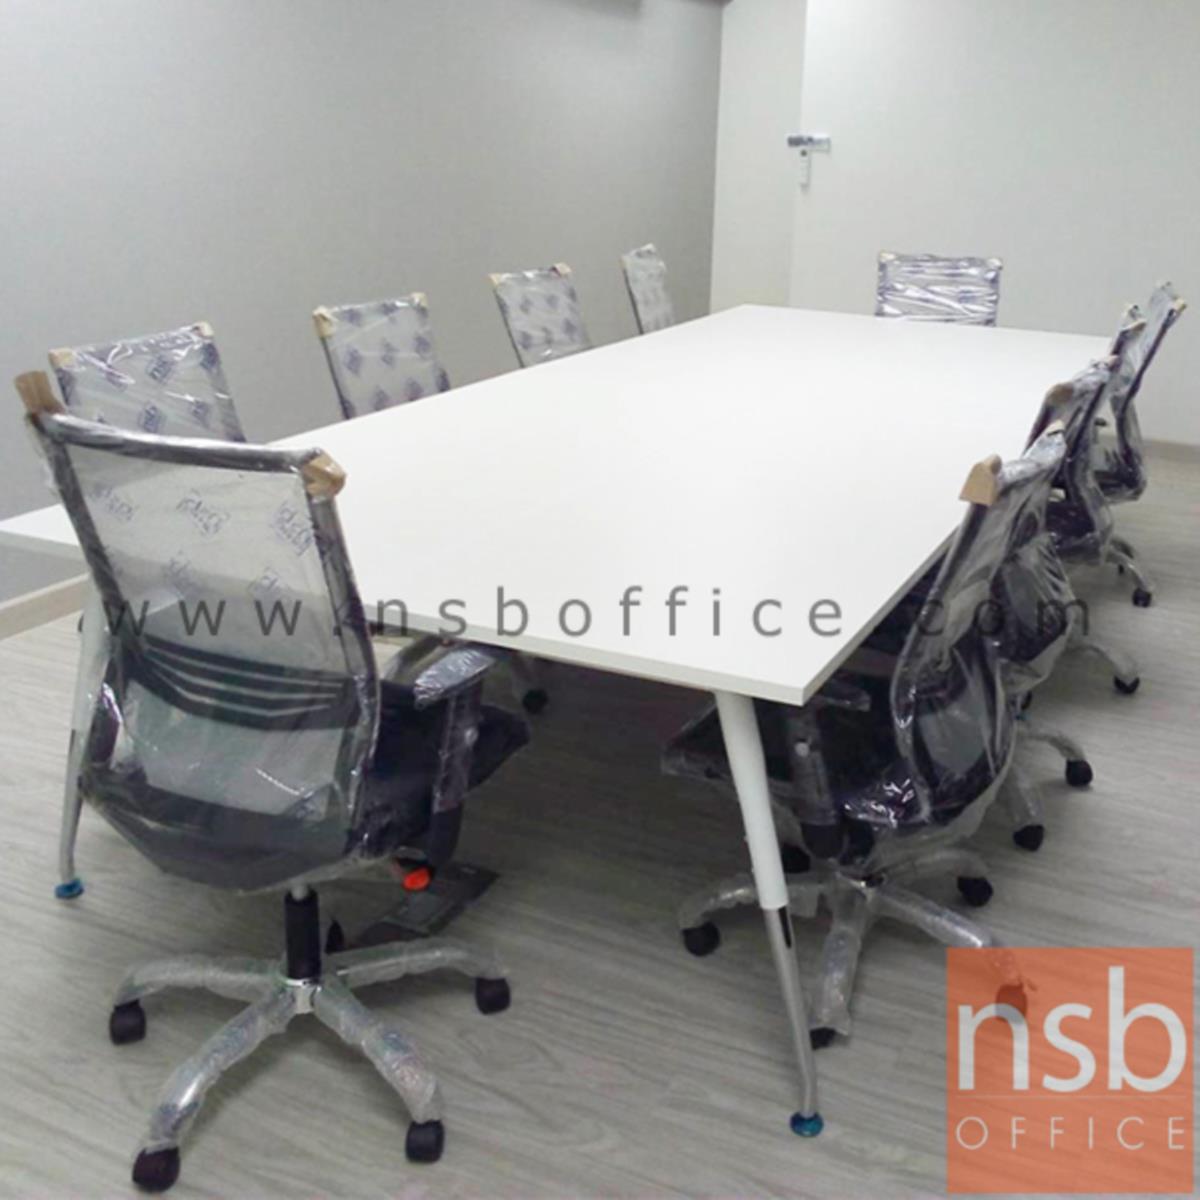 โต๊ะประชุมทรงสี่เหลี่ยมยาว  240W, 300W, 360W, 400W, 480W (120D) cm.  ขาเหล็กปลายเรียว